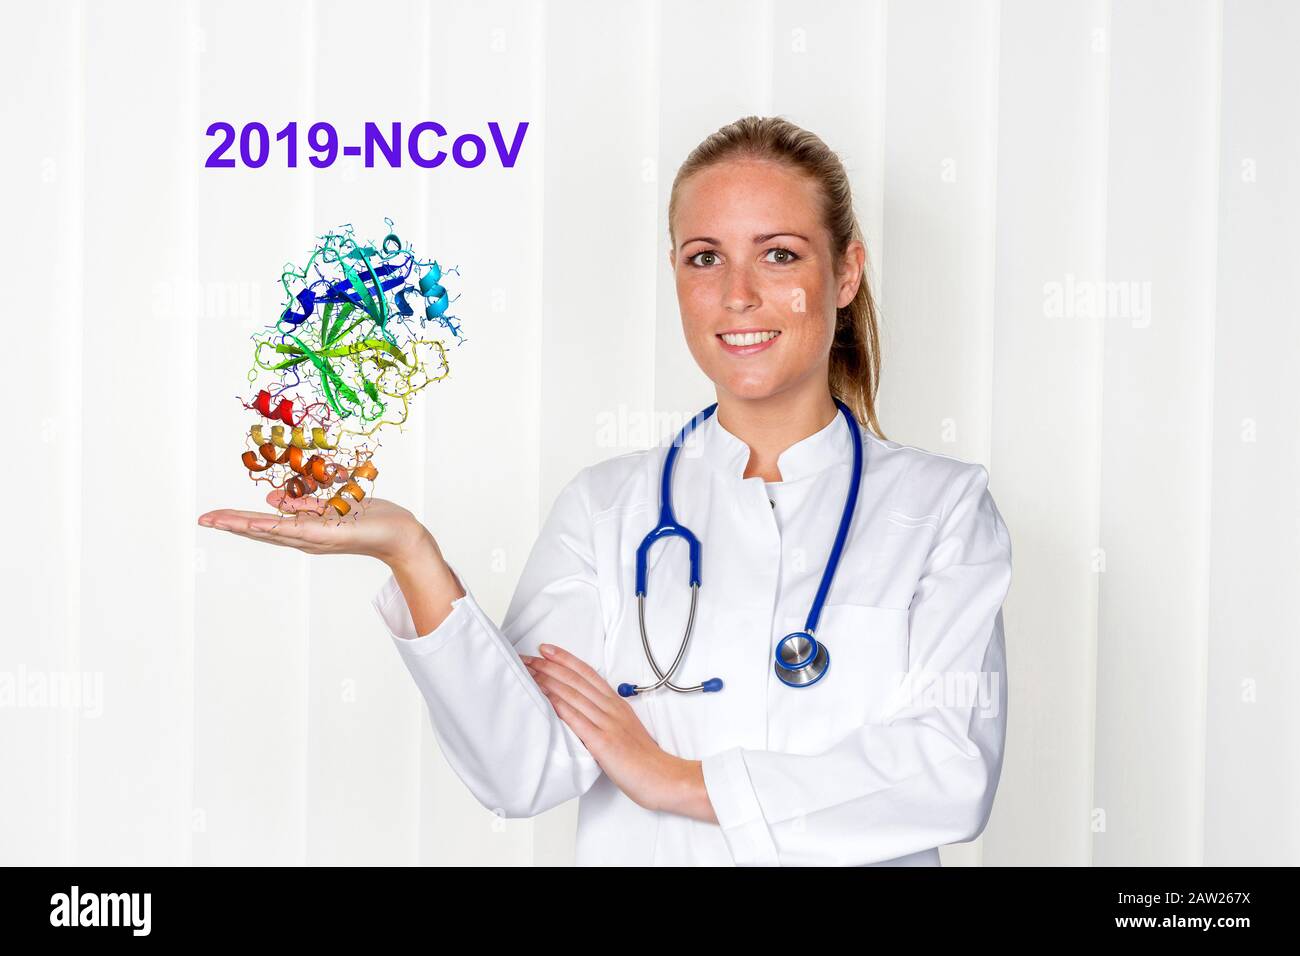 medico femminile con virus corona in mano Foto Stock